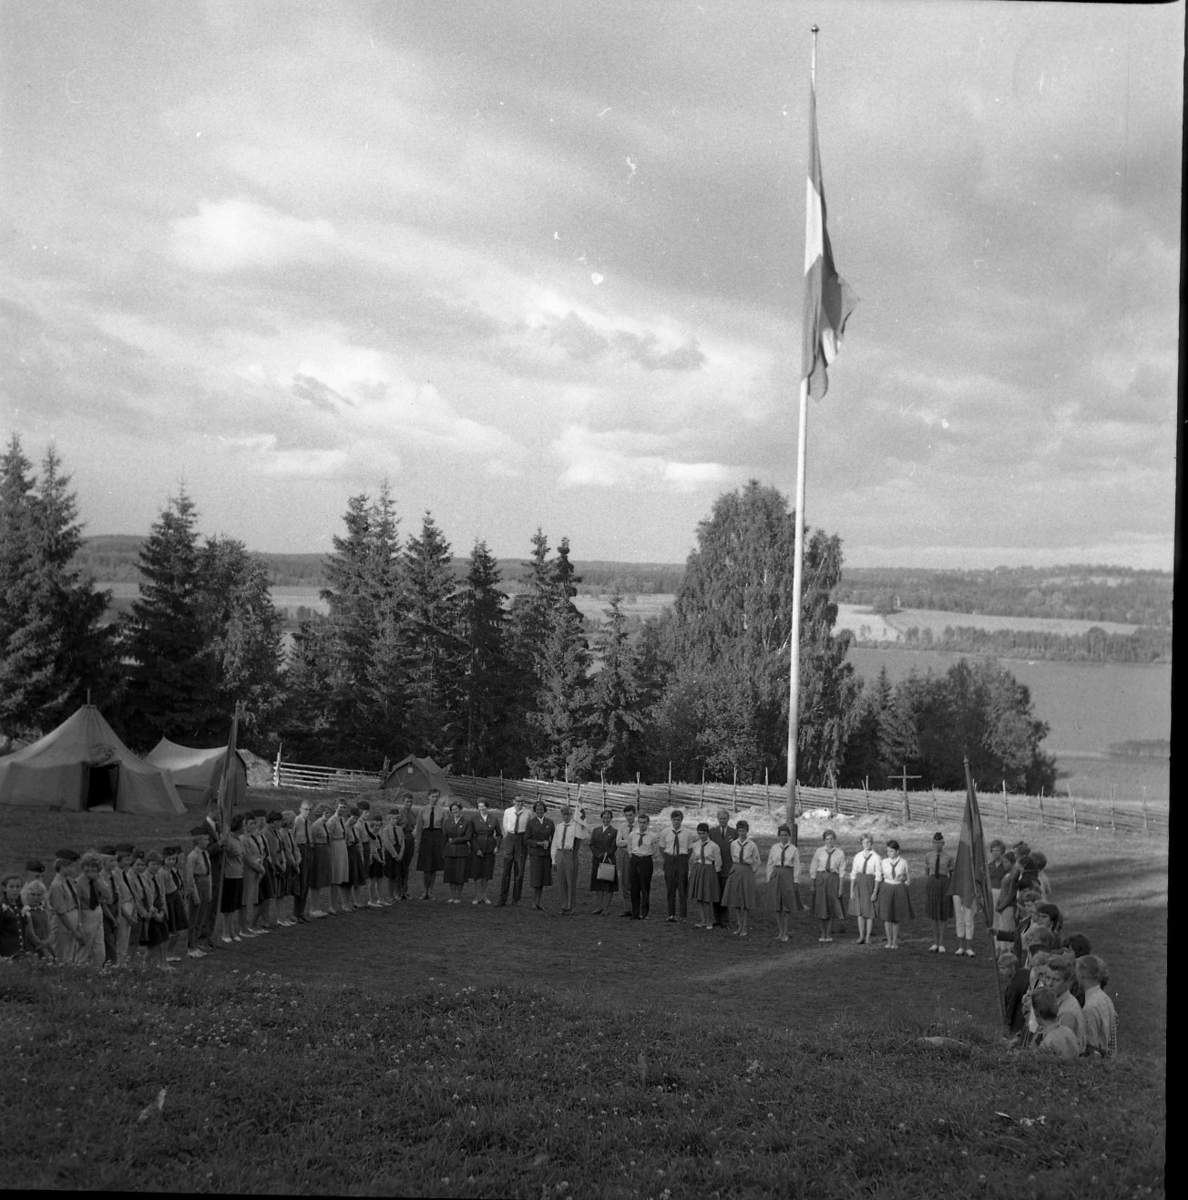 Vy mot en sjö. I mitten står en flaggstång och runt den står det kvinnor och män. Vid sidan av den långa raden med människoir står ett tält upprest.